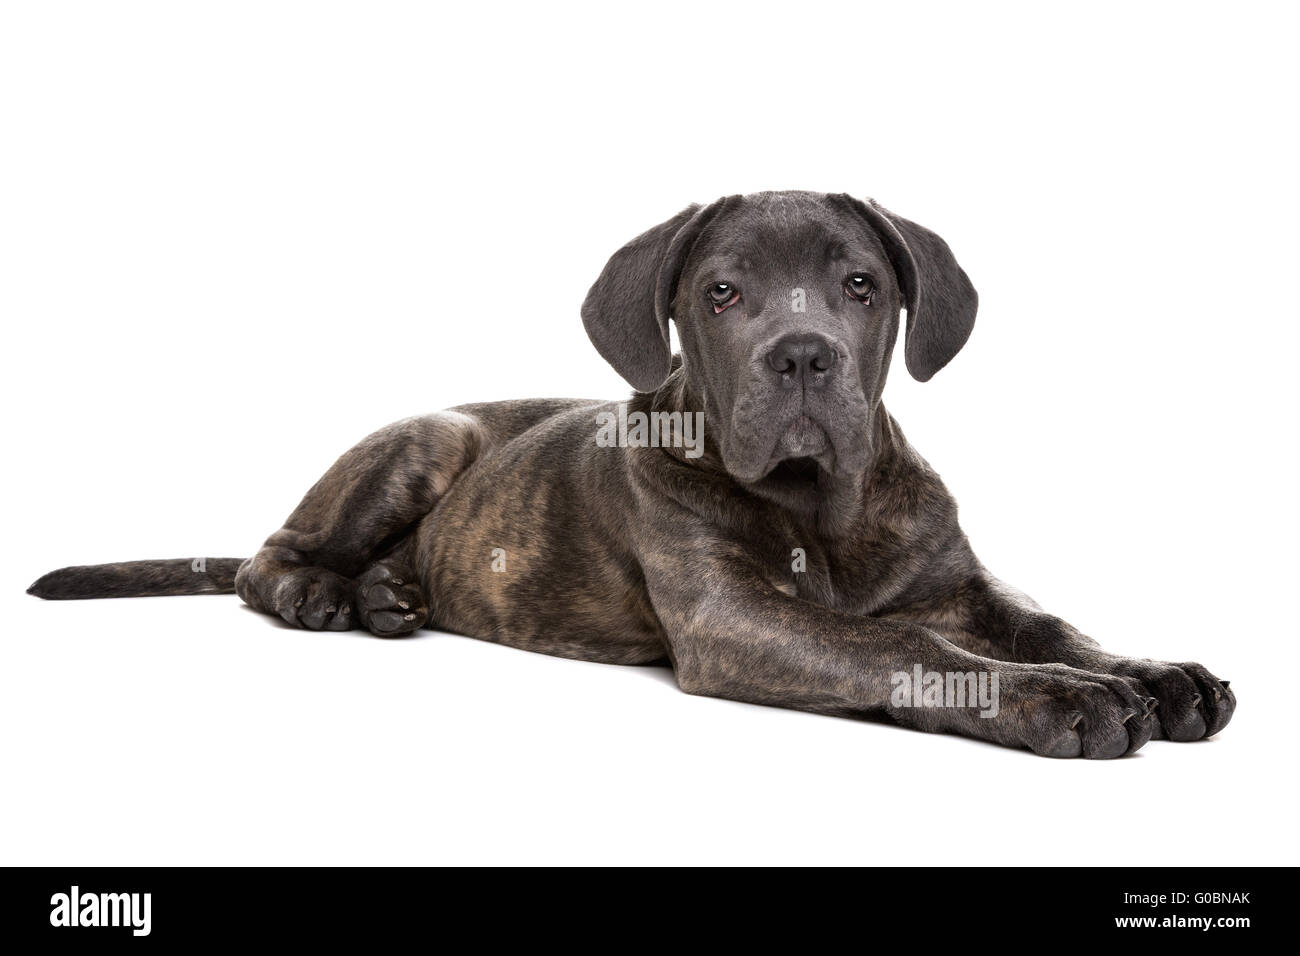 grey cane corso puppy dog Stock Photo